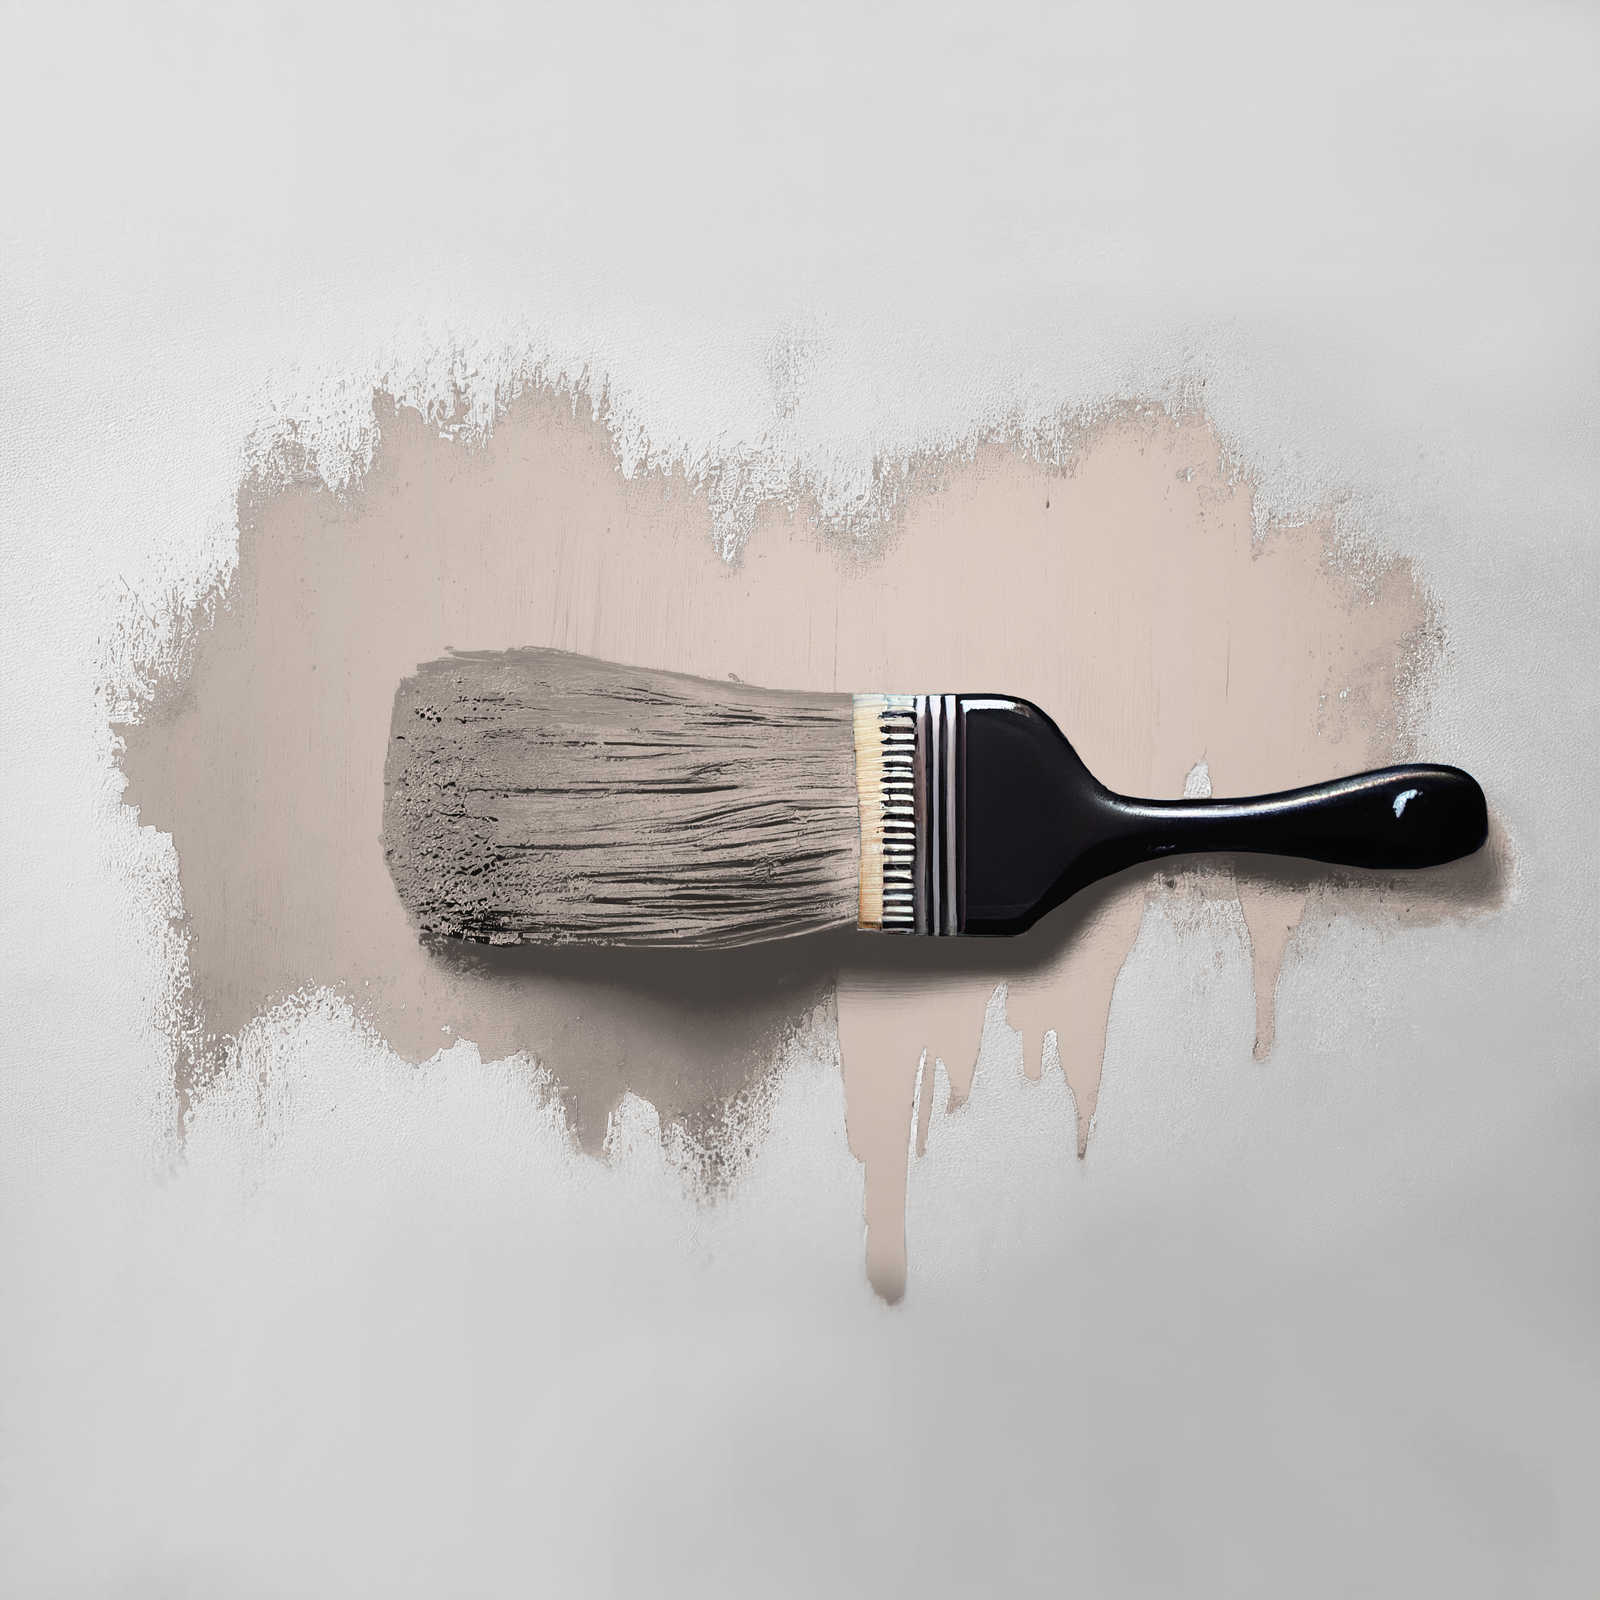             Peinture murale TCK6017 »Chilled Chai Latte« en gris tendre – 2,5 litres
        